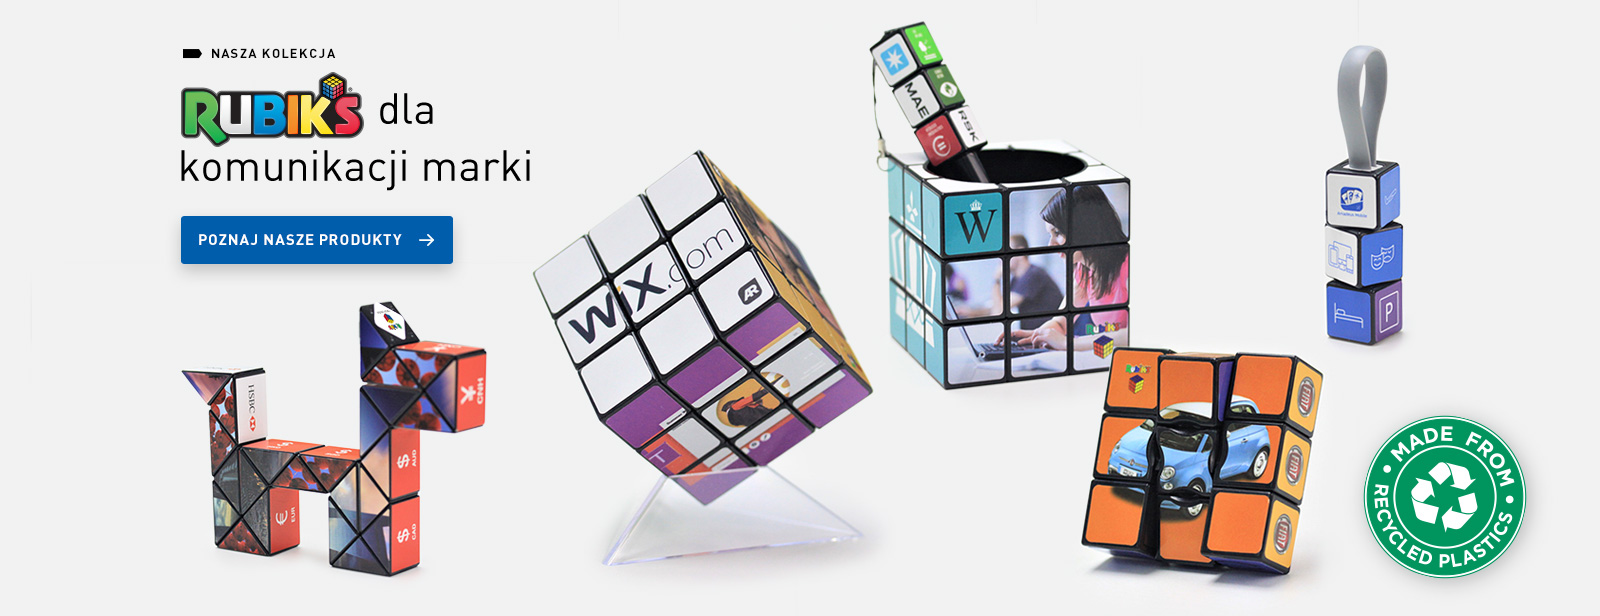 Rubik’s dla komunikacji marki